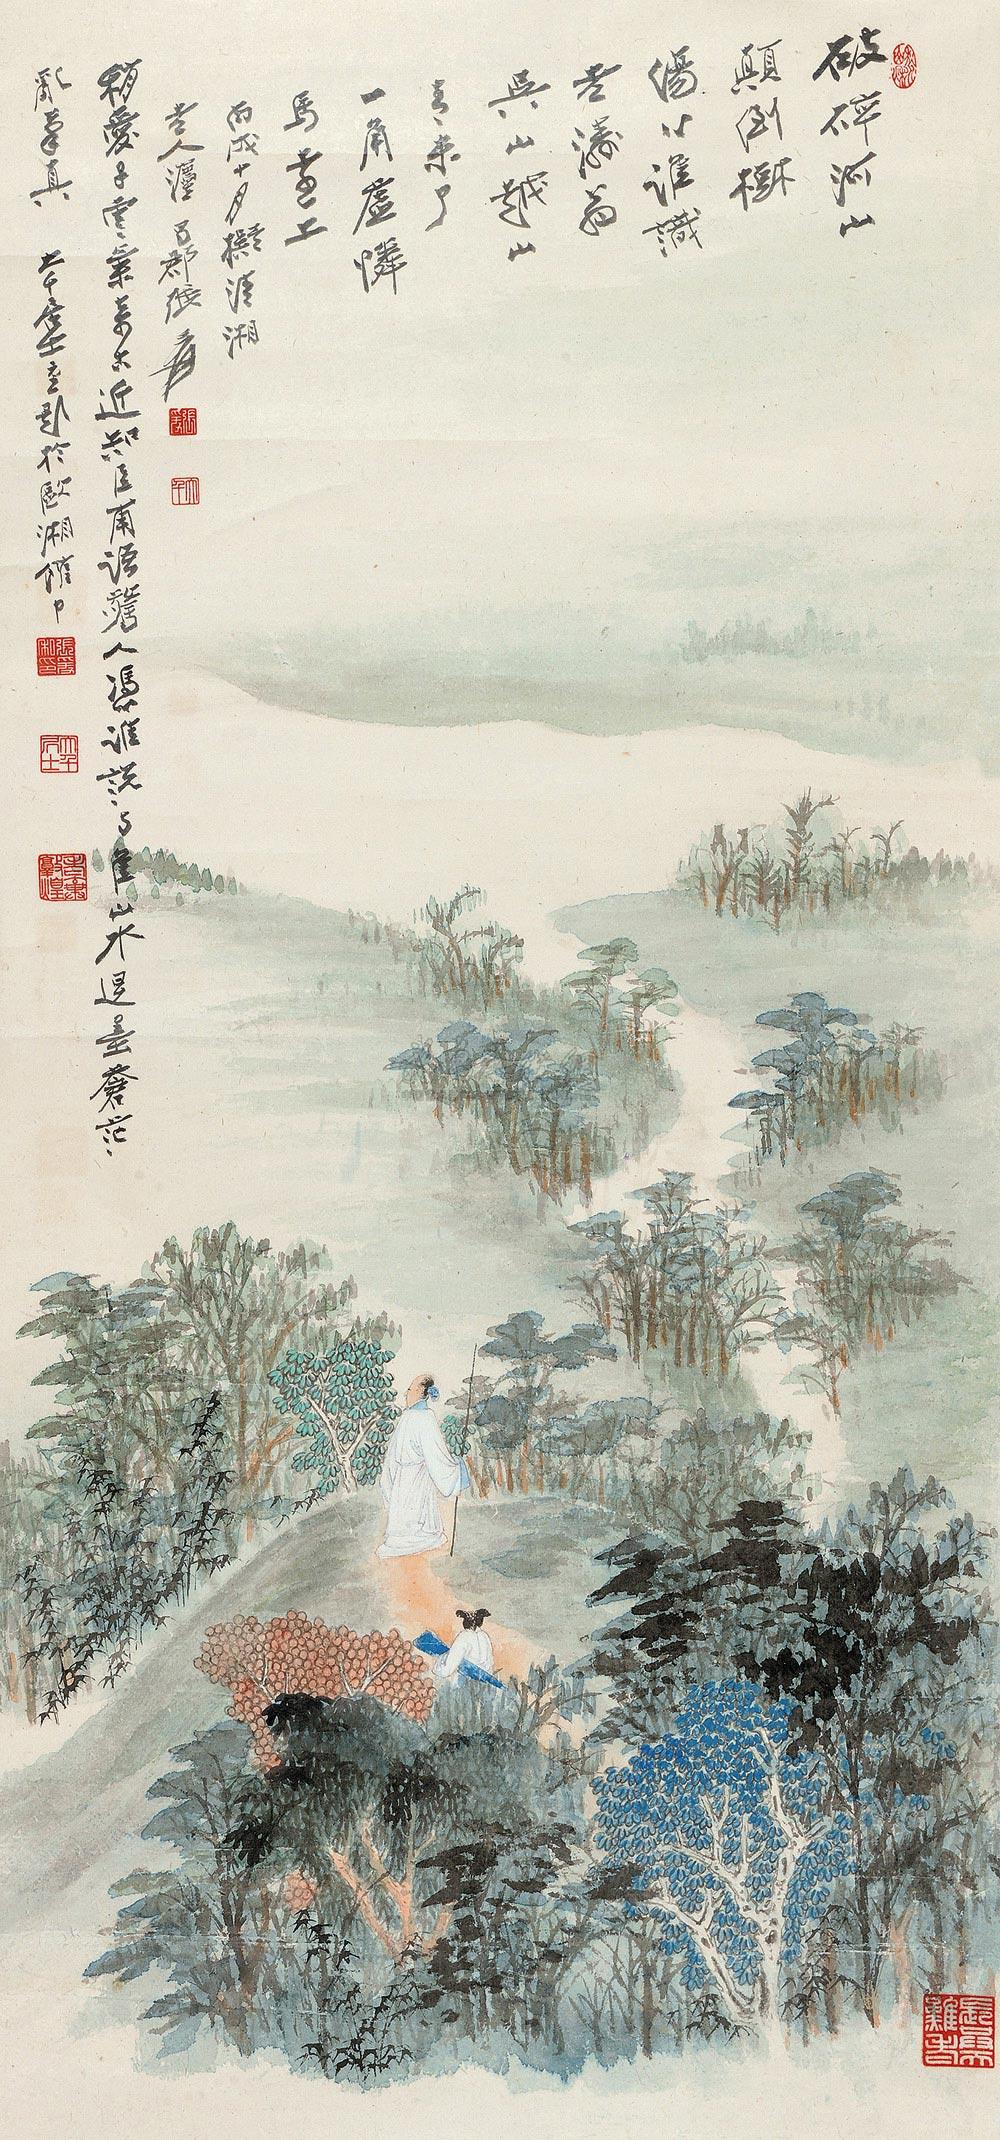 《中国名画家全集—张大千》p37,张明远编,河北教